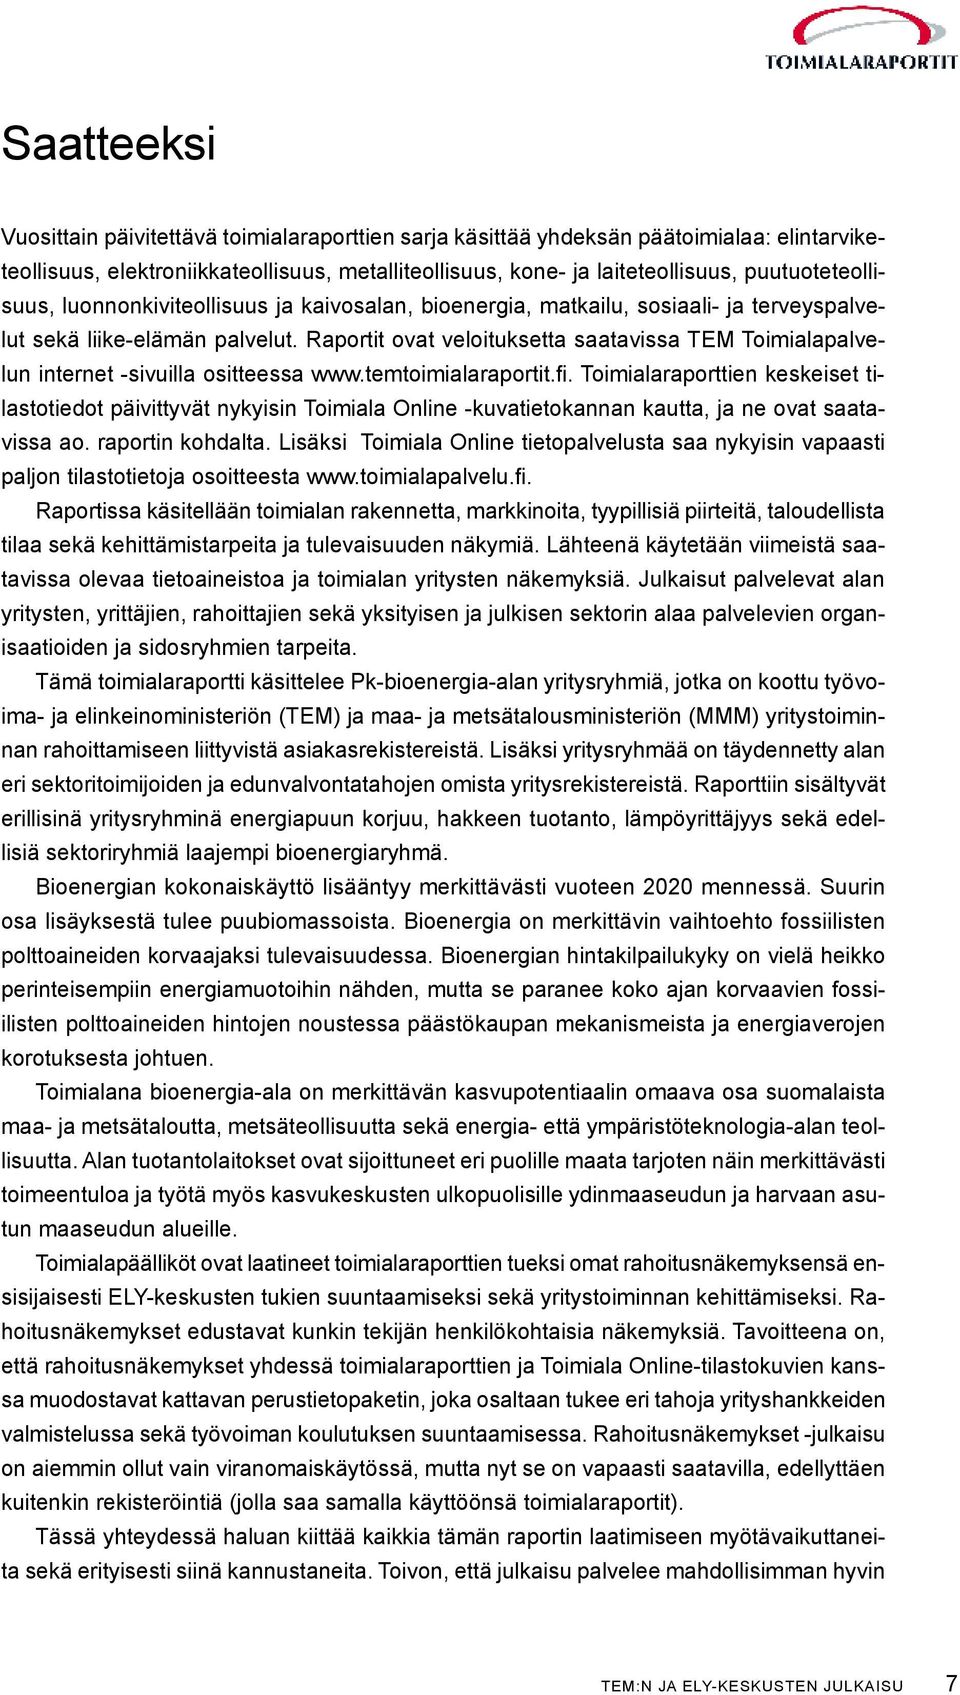 Raportit ovat veloituksetta saatavissa TEM Toimialapalvelun internet -sivuilla ositteessa www.temtoimialaraportit.fi.